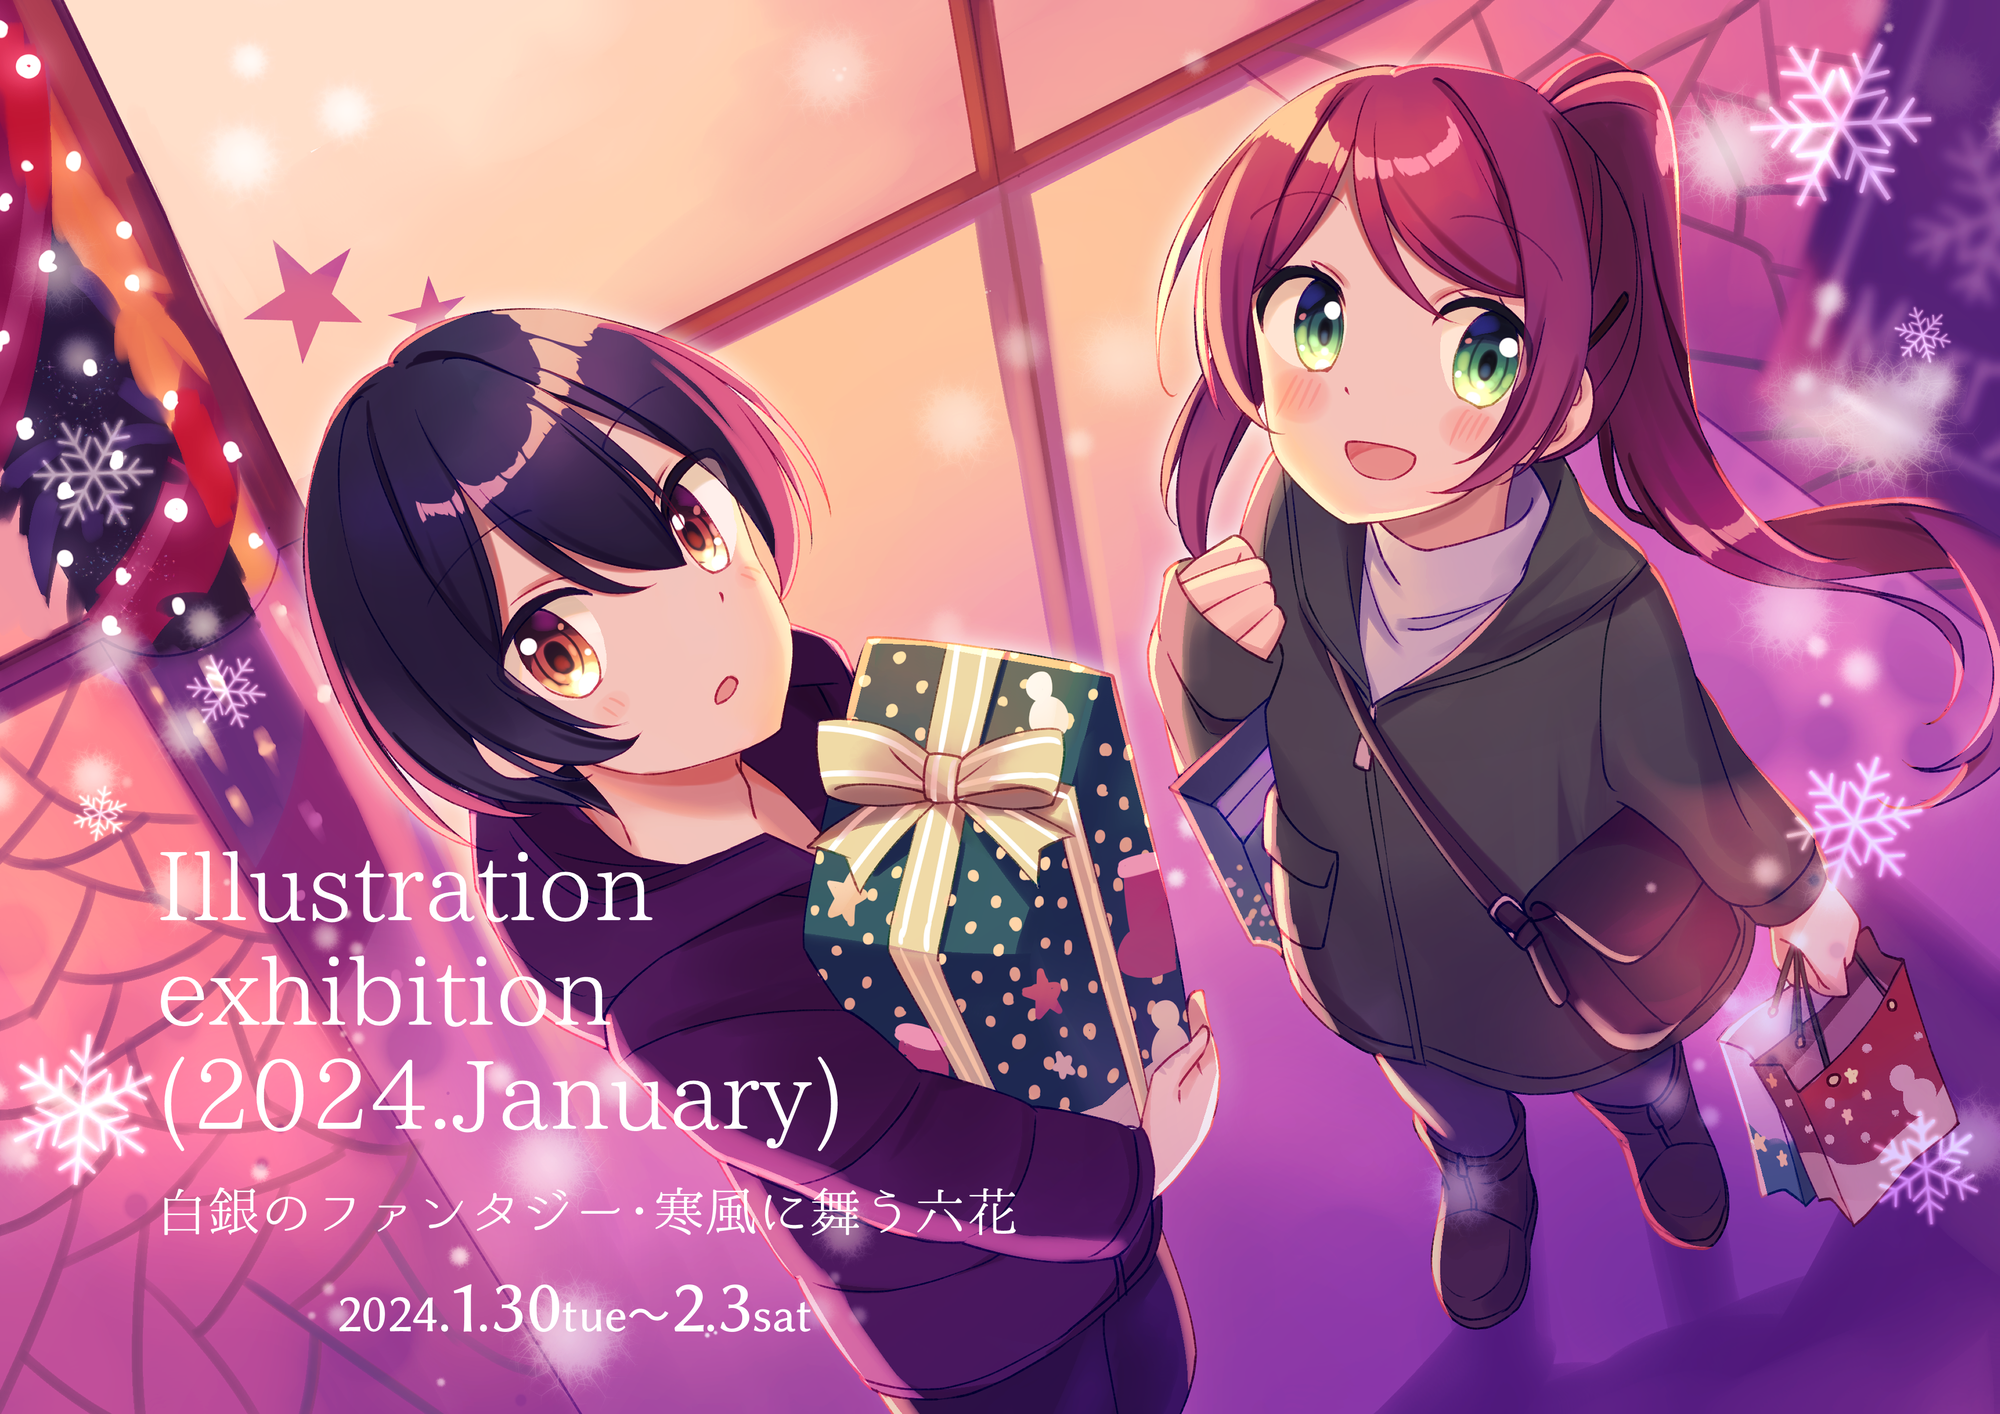 【グループ展】Illustration exhibition (2024.January)